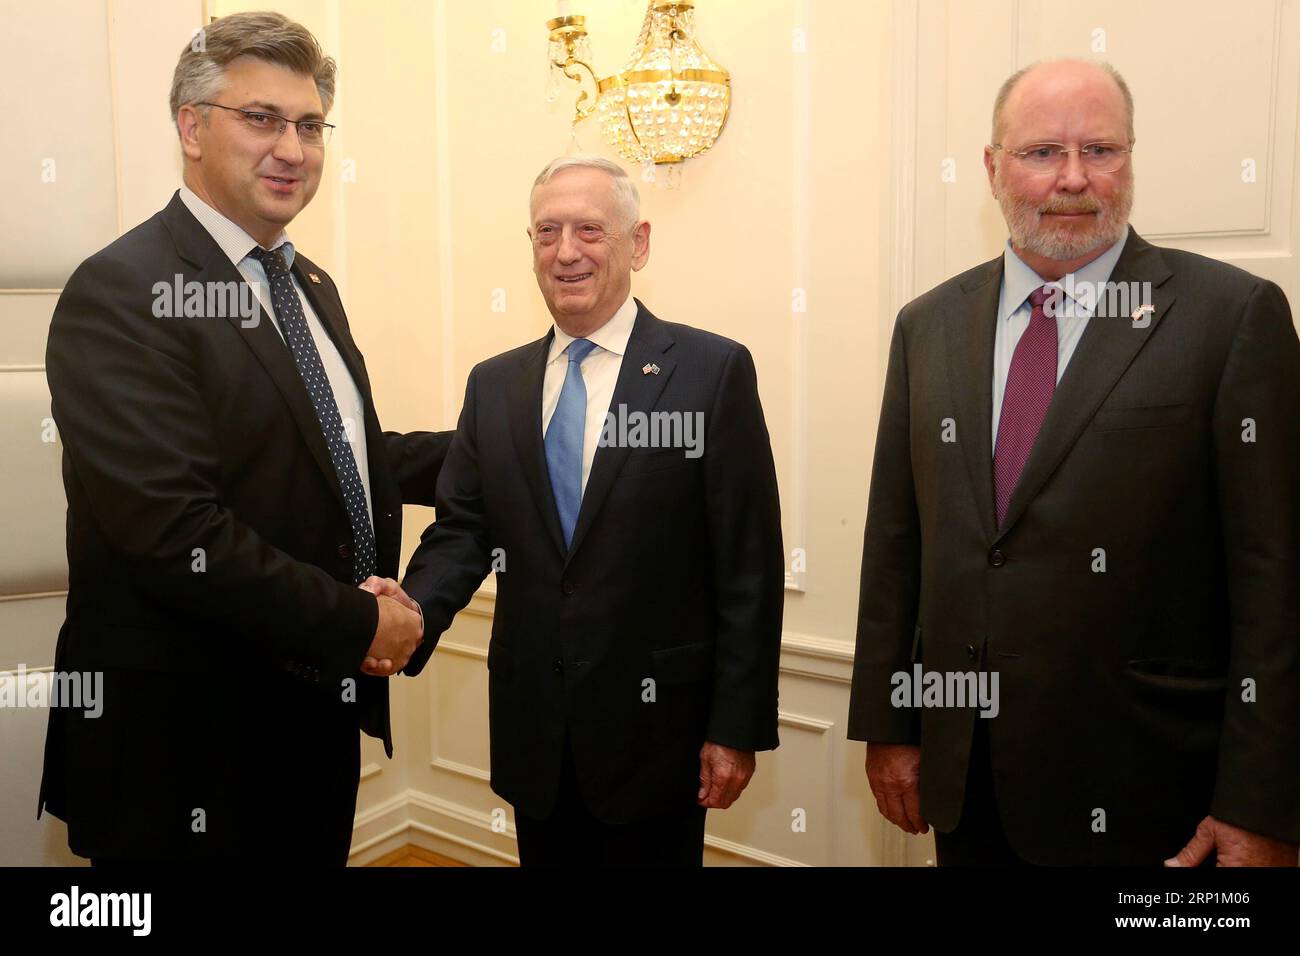 (180712) -- ZAGREB, 12. Juli 2018 -- der kroatische Premierminister Andrej Plenkovic (L) gibt am 12. Juli 2018 in Zagreb (Kroatien) dem US-Verteidigungsminister James Mattis (C) die Hand. James Mattis versprach am Donnerstag, bei der Modernisierung der kroatischen Streitkräfte zu helfen. KROATIEN-ZAGREB-US-VERTEIDIGUNGSMINISTER BESUCHT DALIBORXURUKALOVIC PUBLICATIONXNOTXINXCHN Stockfoto